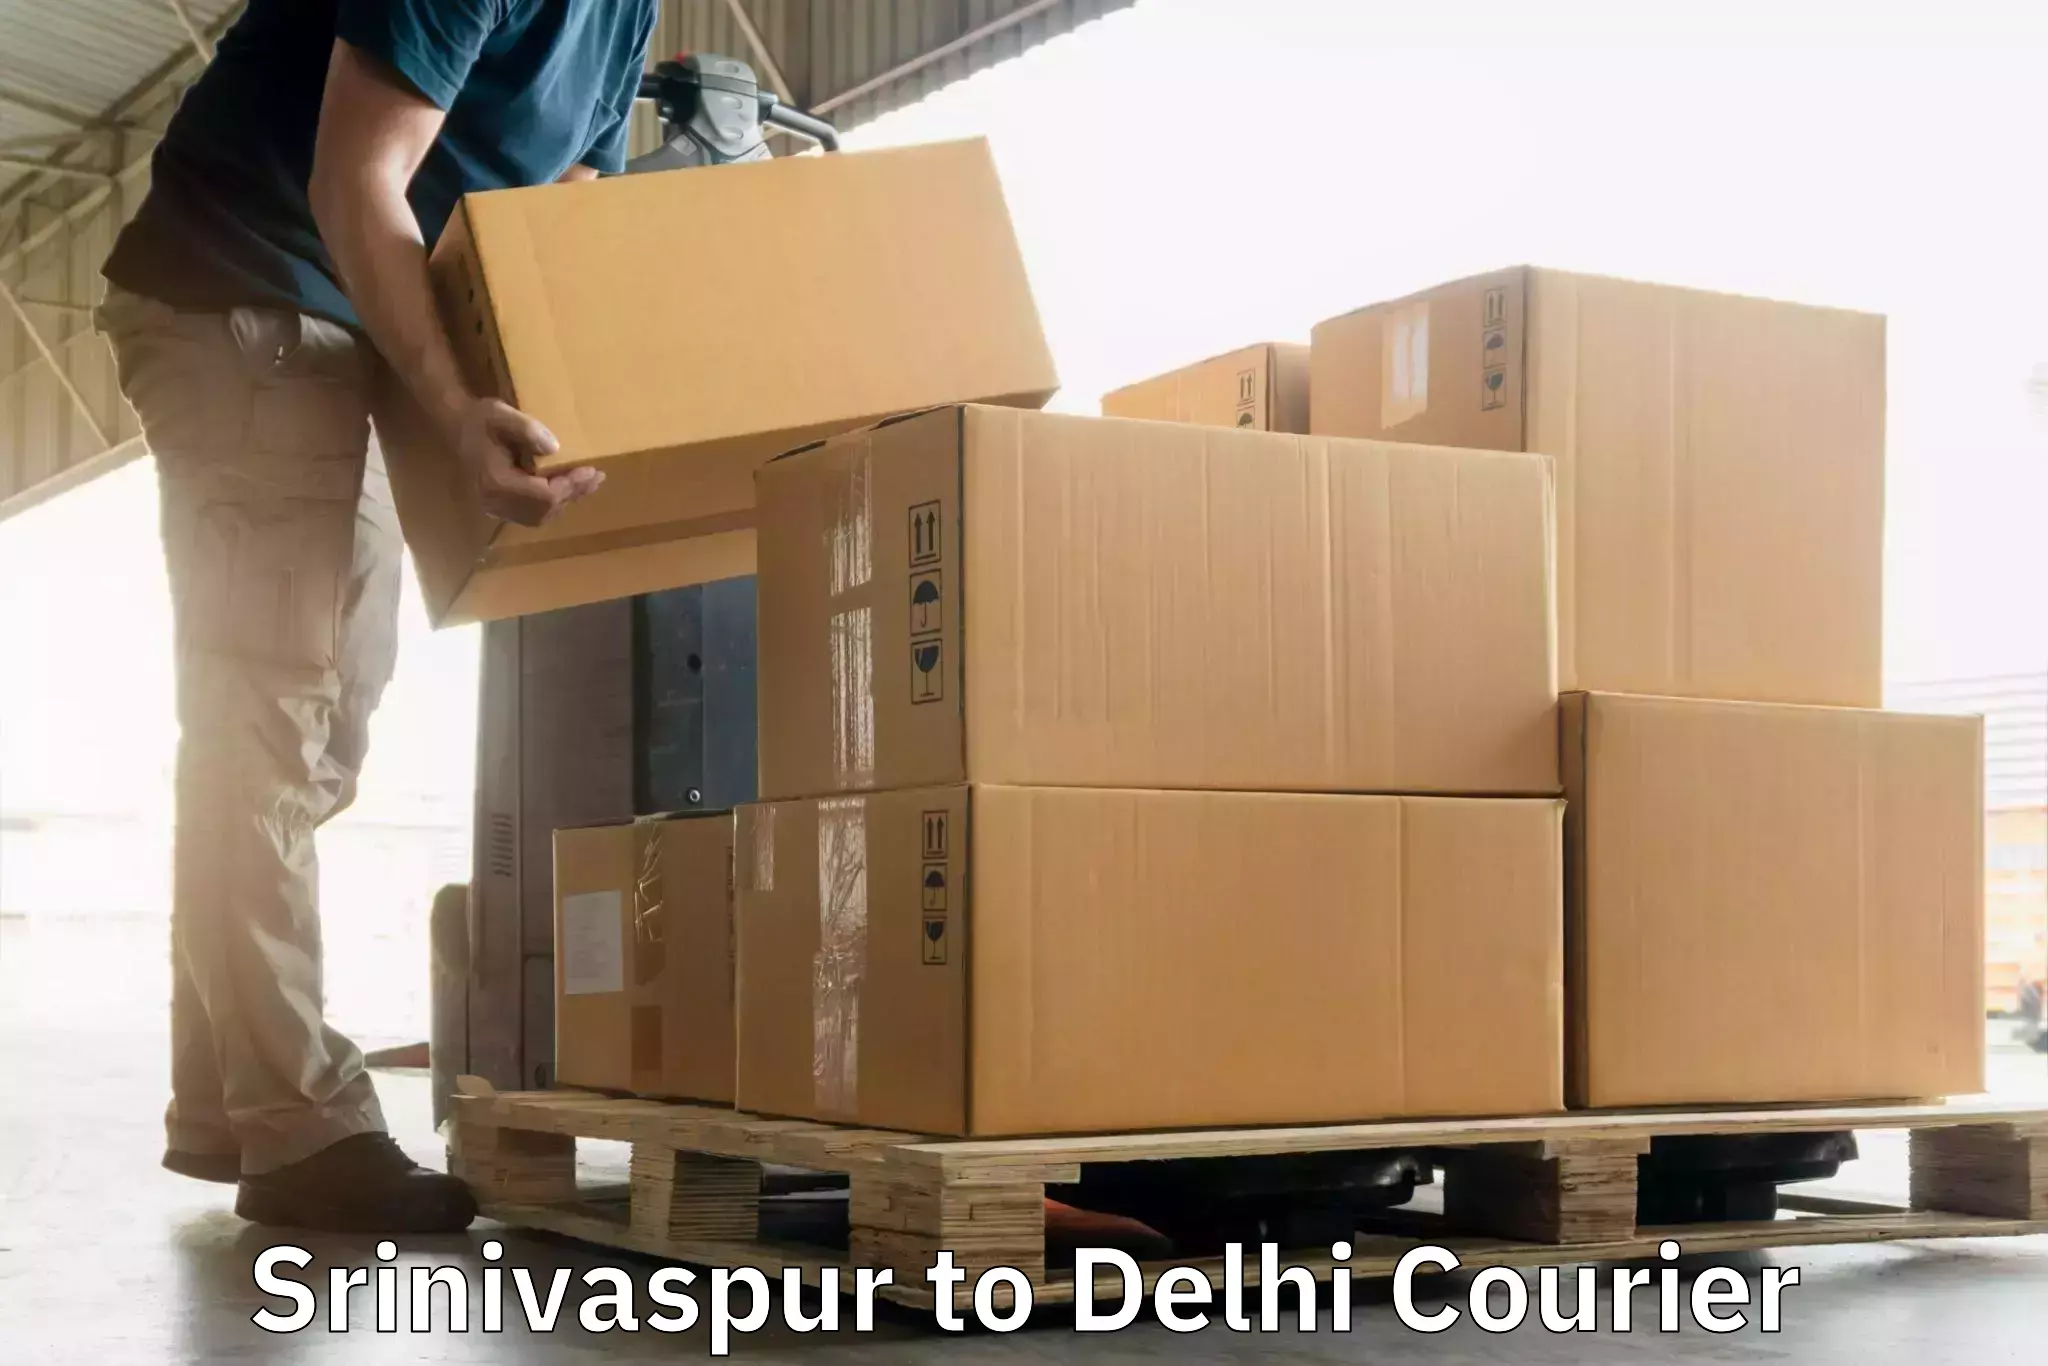 Door-to-door freight service Srinivaspur to NCR